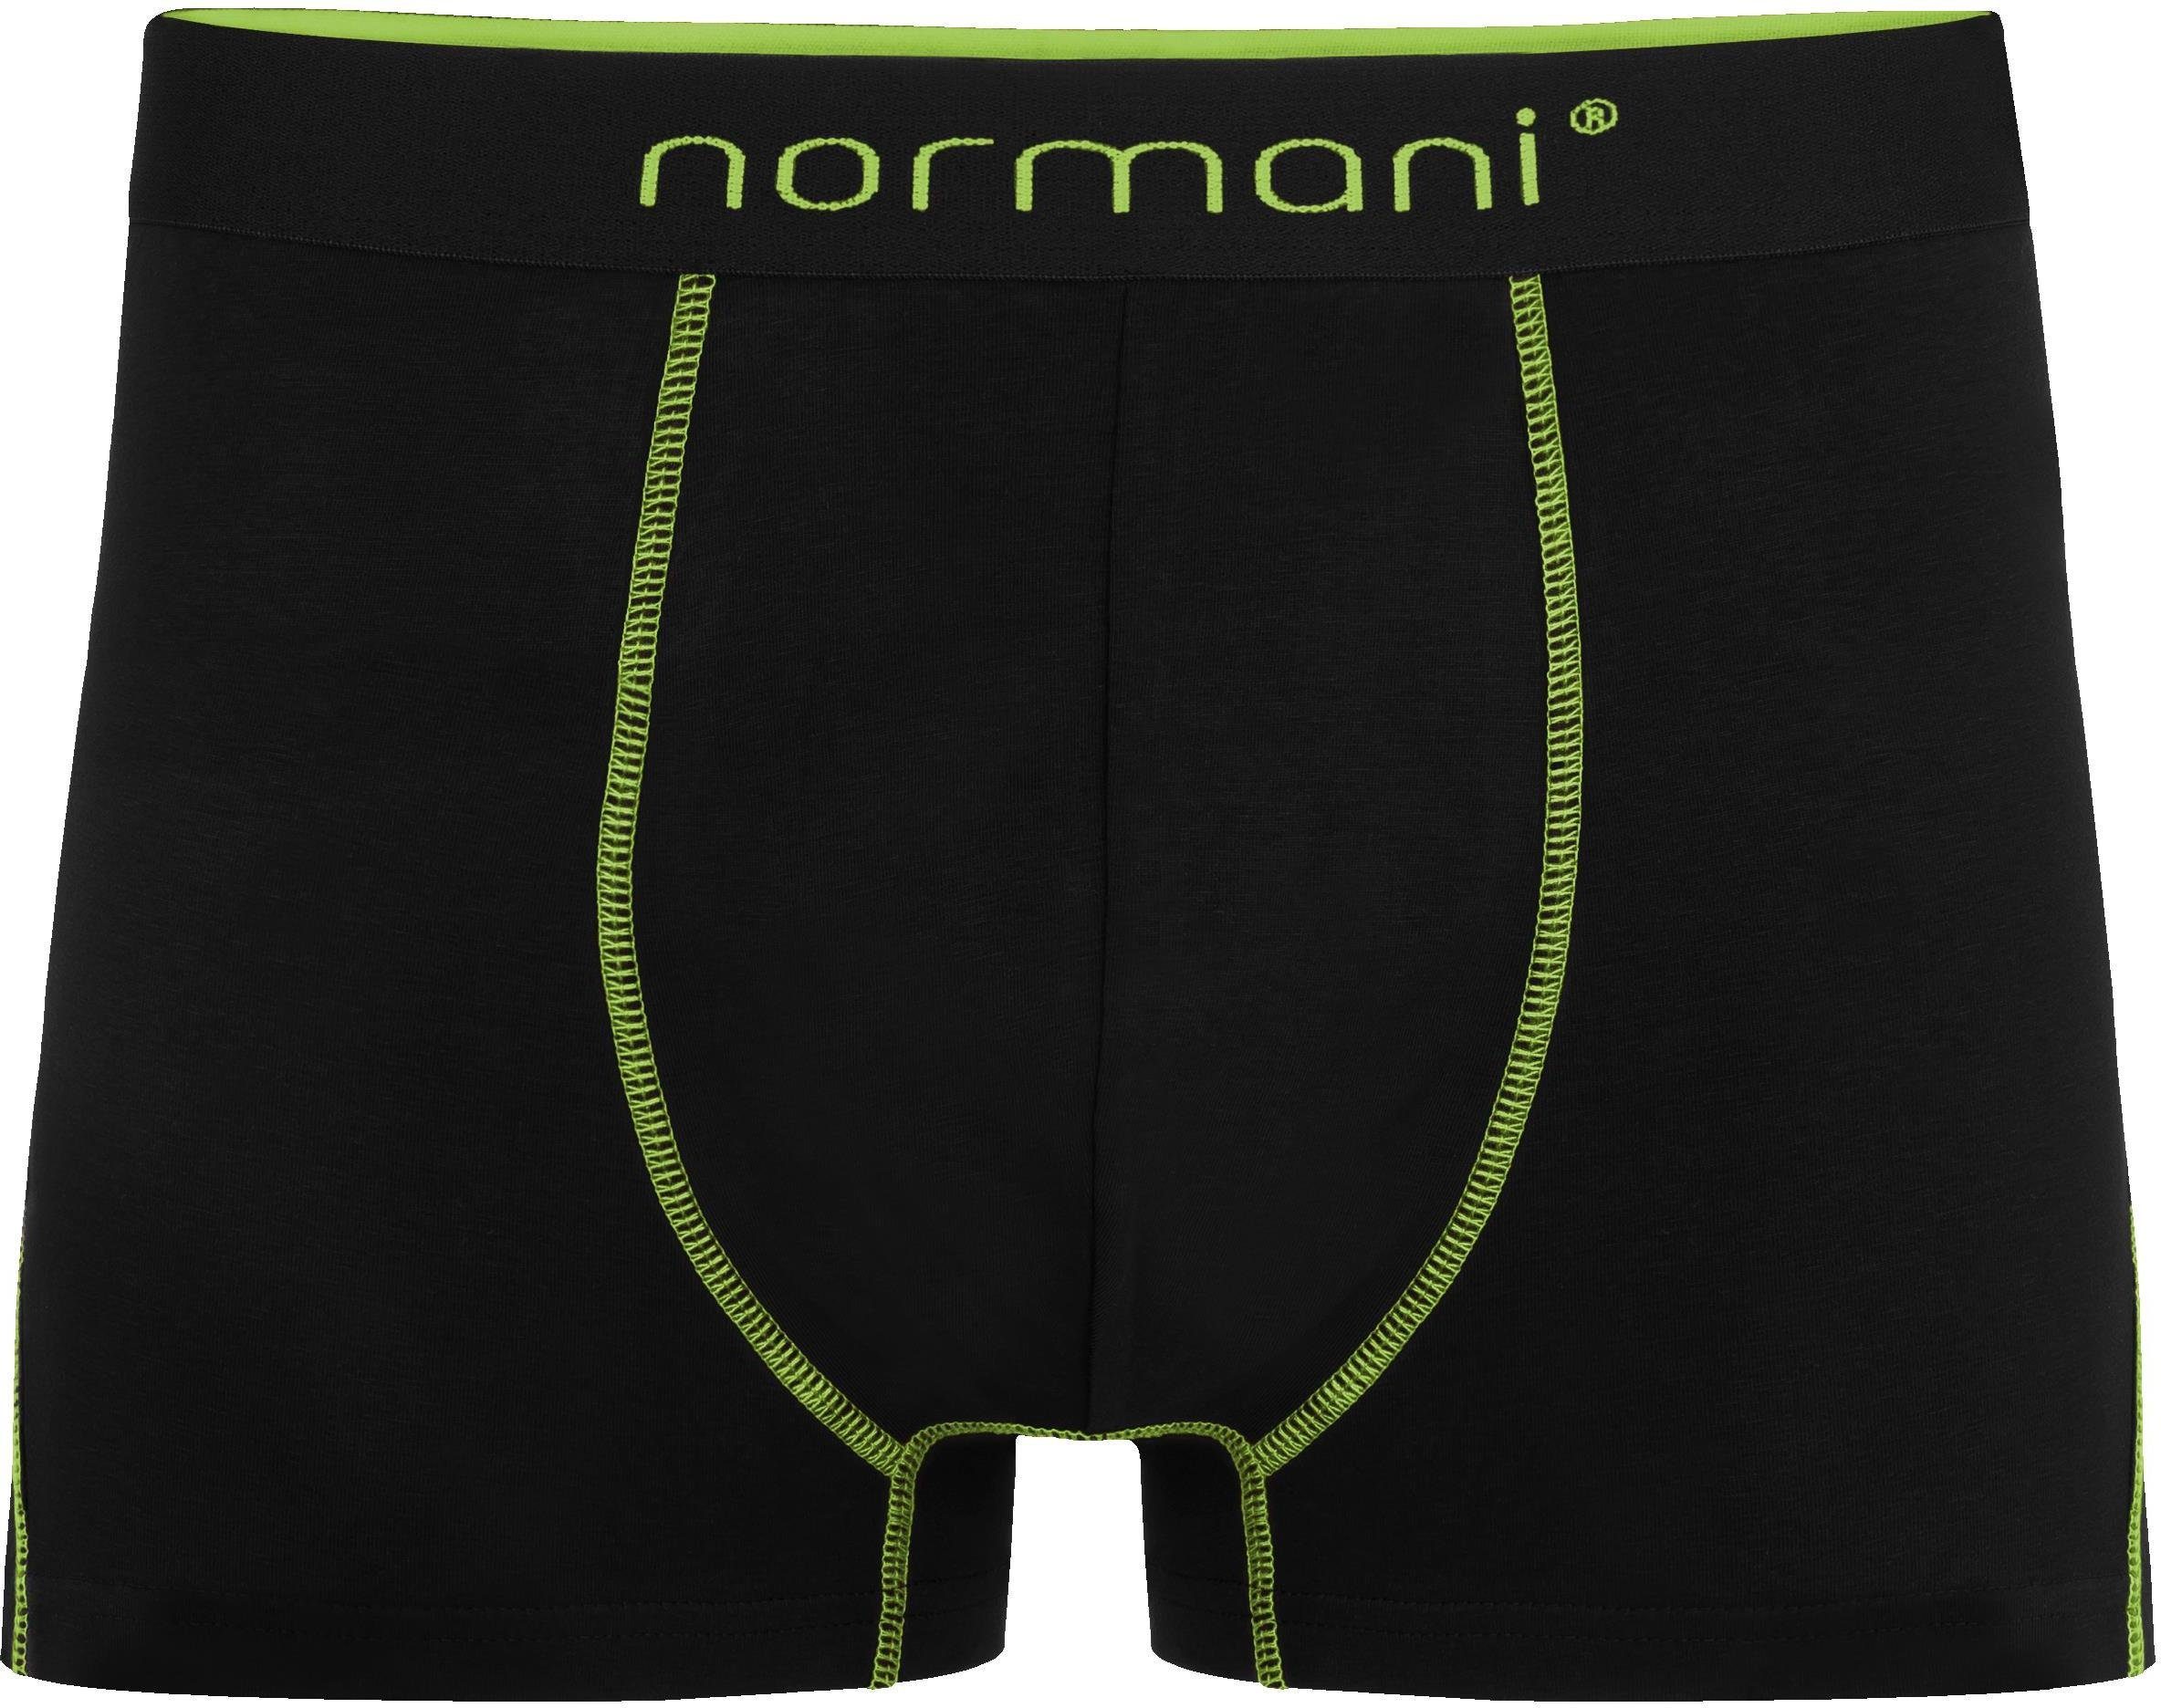 Baumwoll-Boxershorts 6 Männer Boxershorts Herren für atmungsaktiver Baumwolle normani Grün aus Unterhose